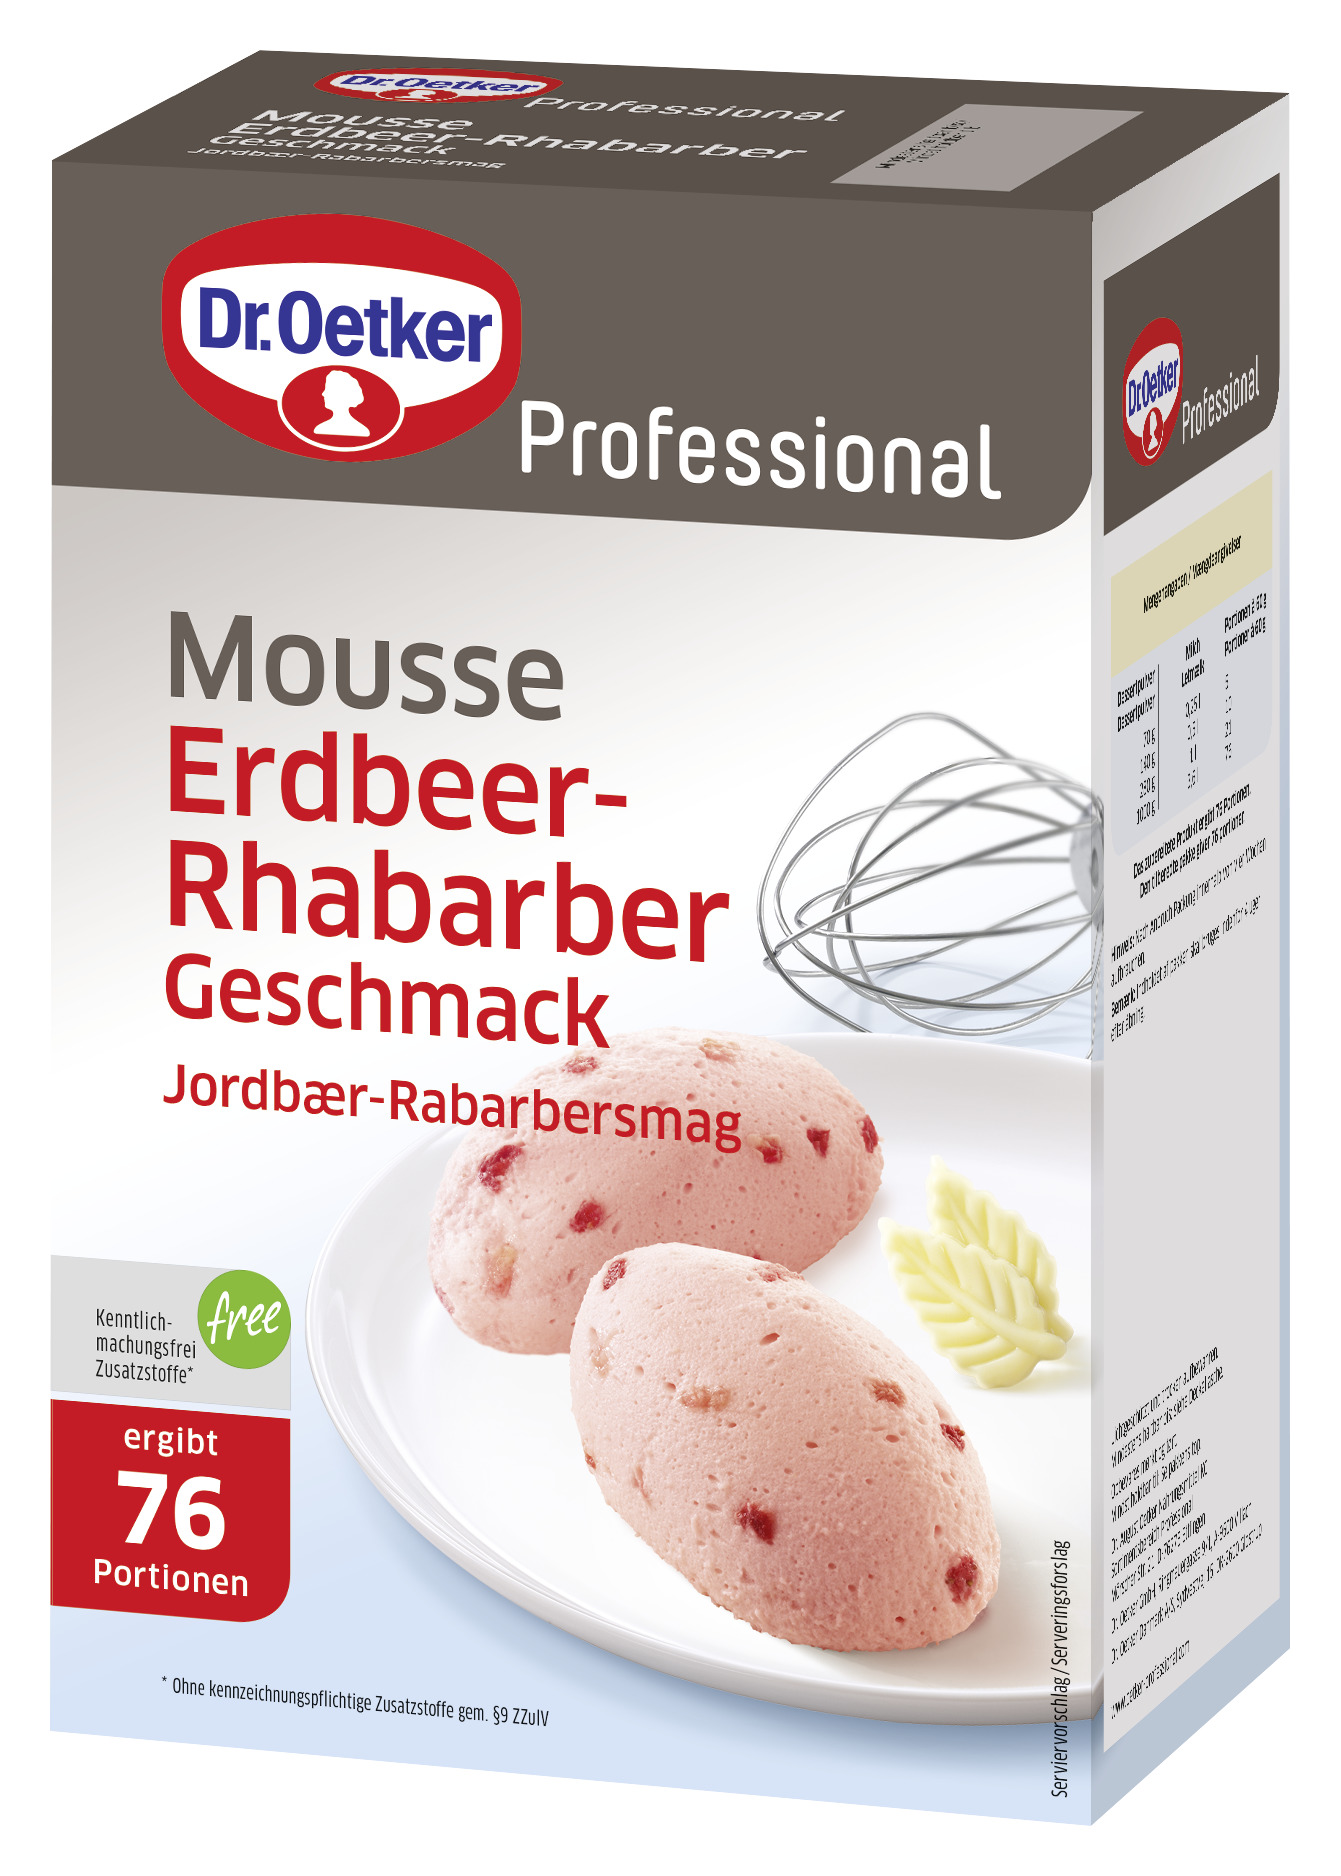 Mousse Erdbeer-Rhabarber Geschmack 1000g